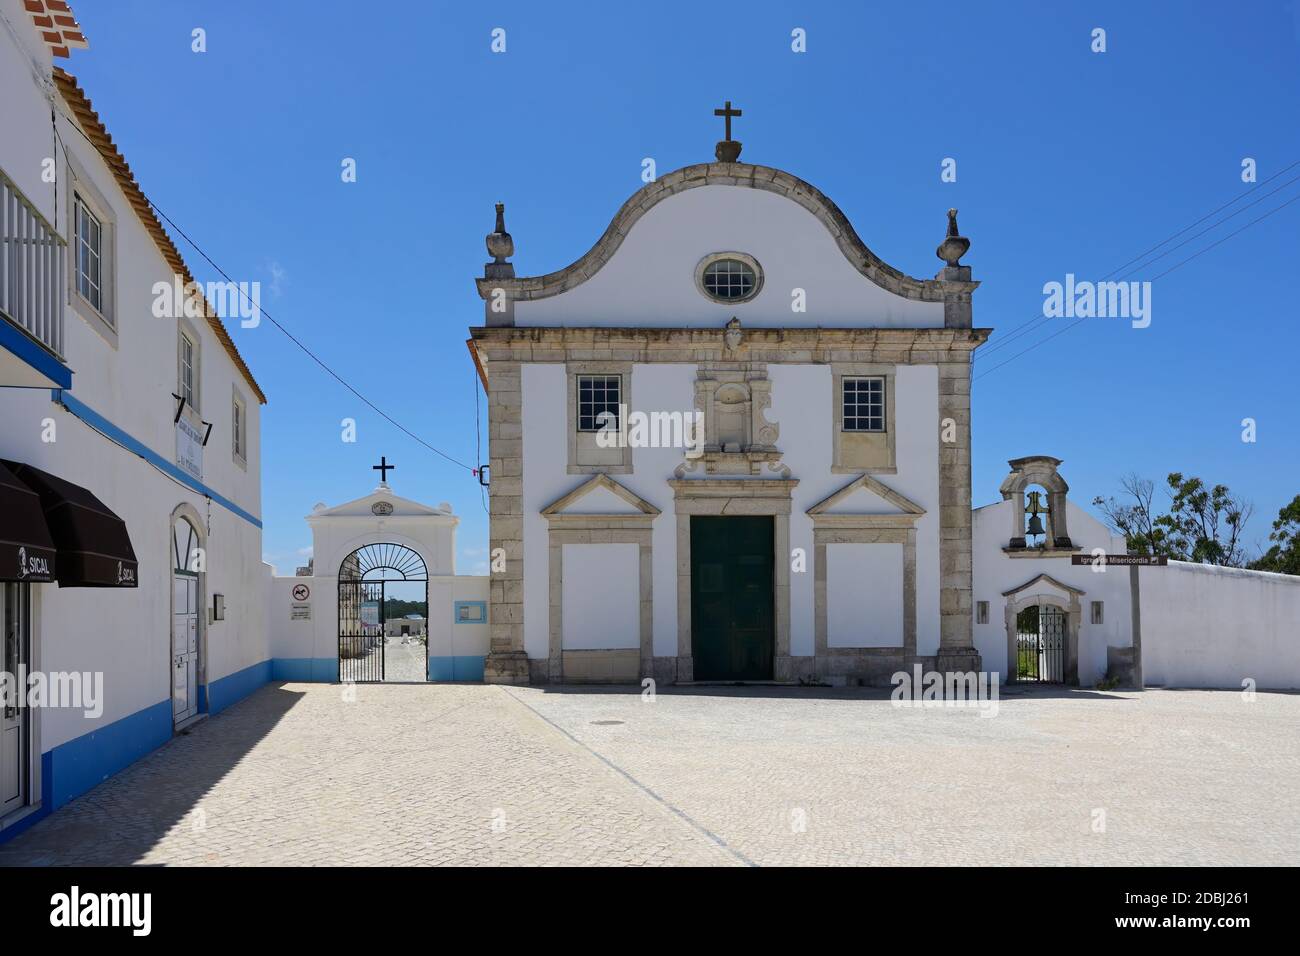 Eglise de Misericordia, Pederneira, Nazaré, quartier de Leiria, Portugal, Europe Banque D'Images